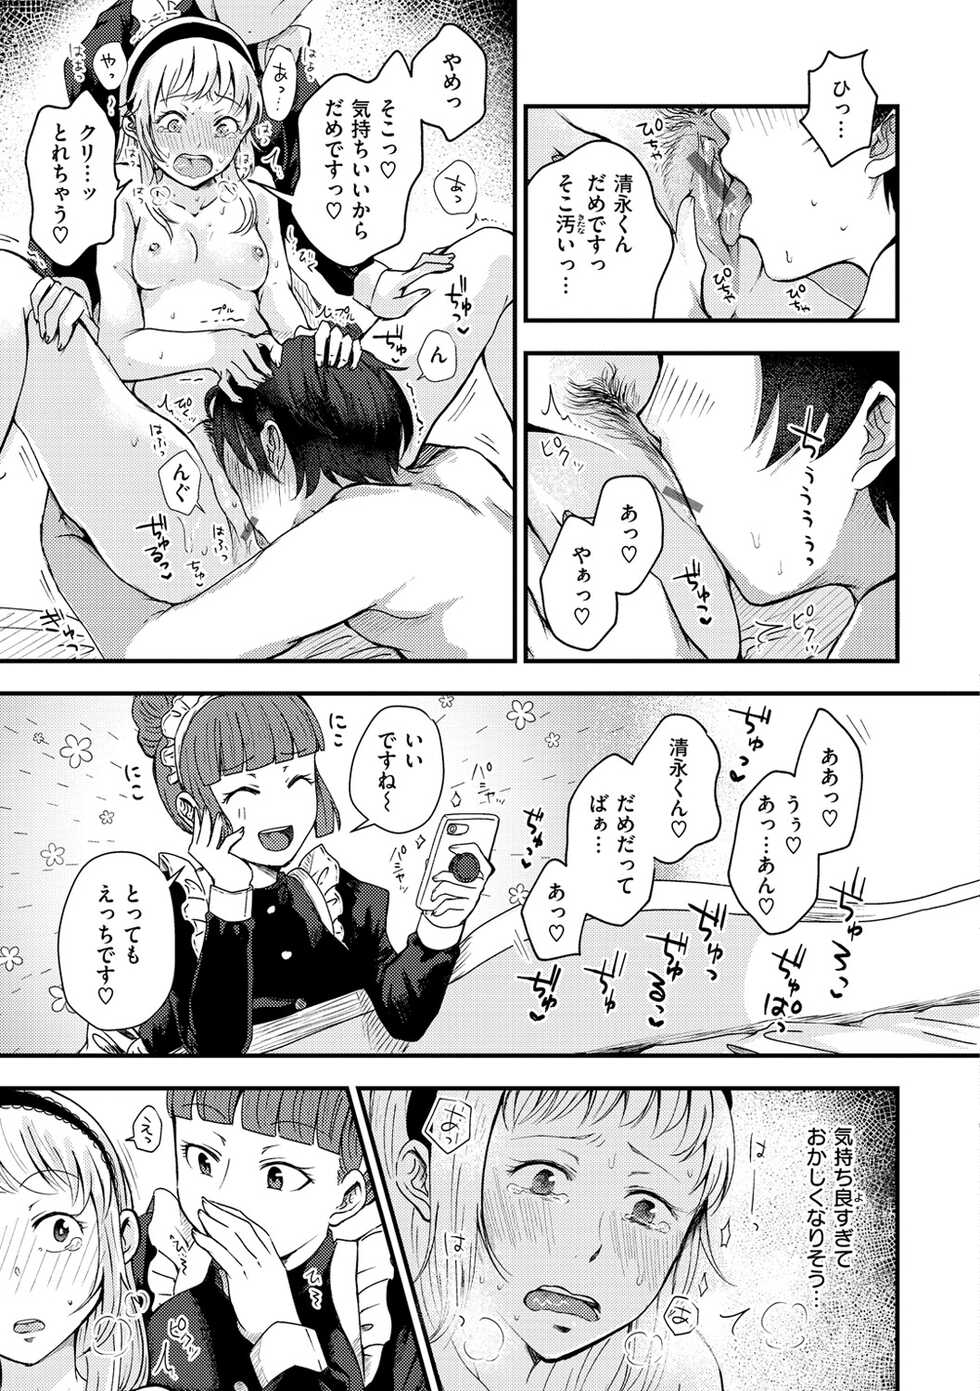 [Enoki] Kekkyoku wa Mesu nano de - She's Just a Pussy. [Digital] - Page 35